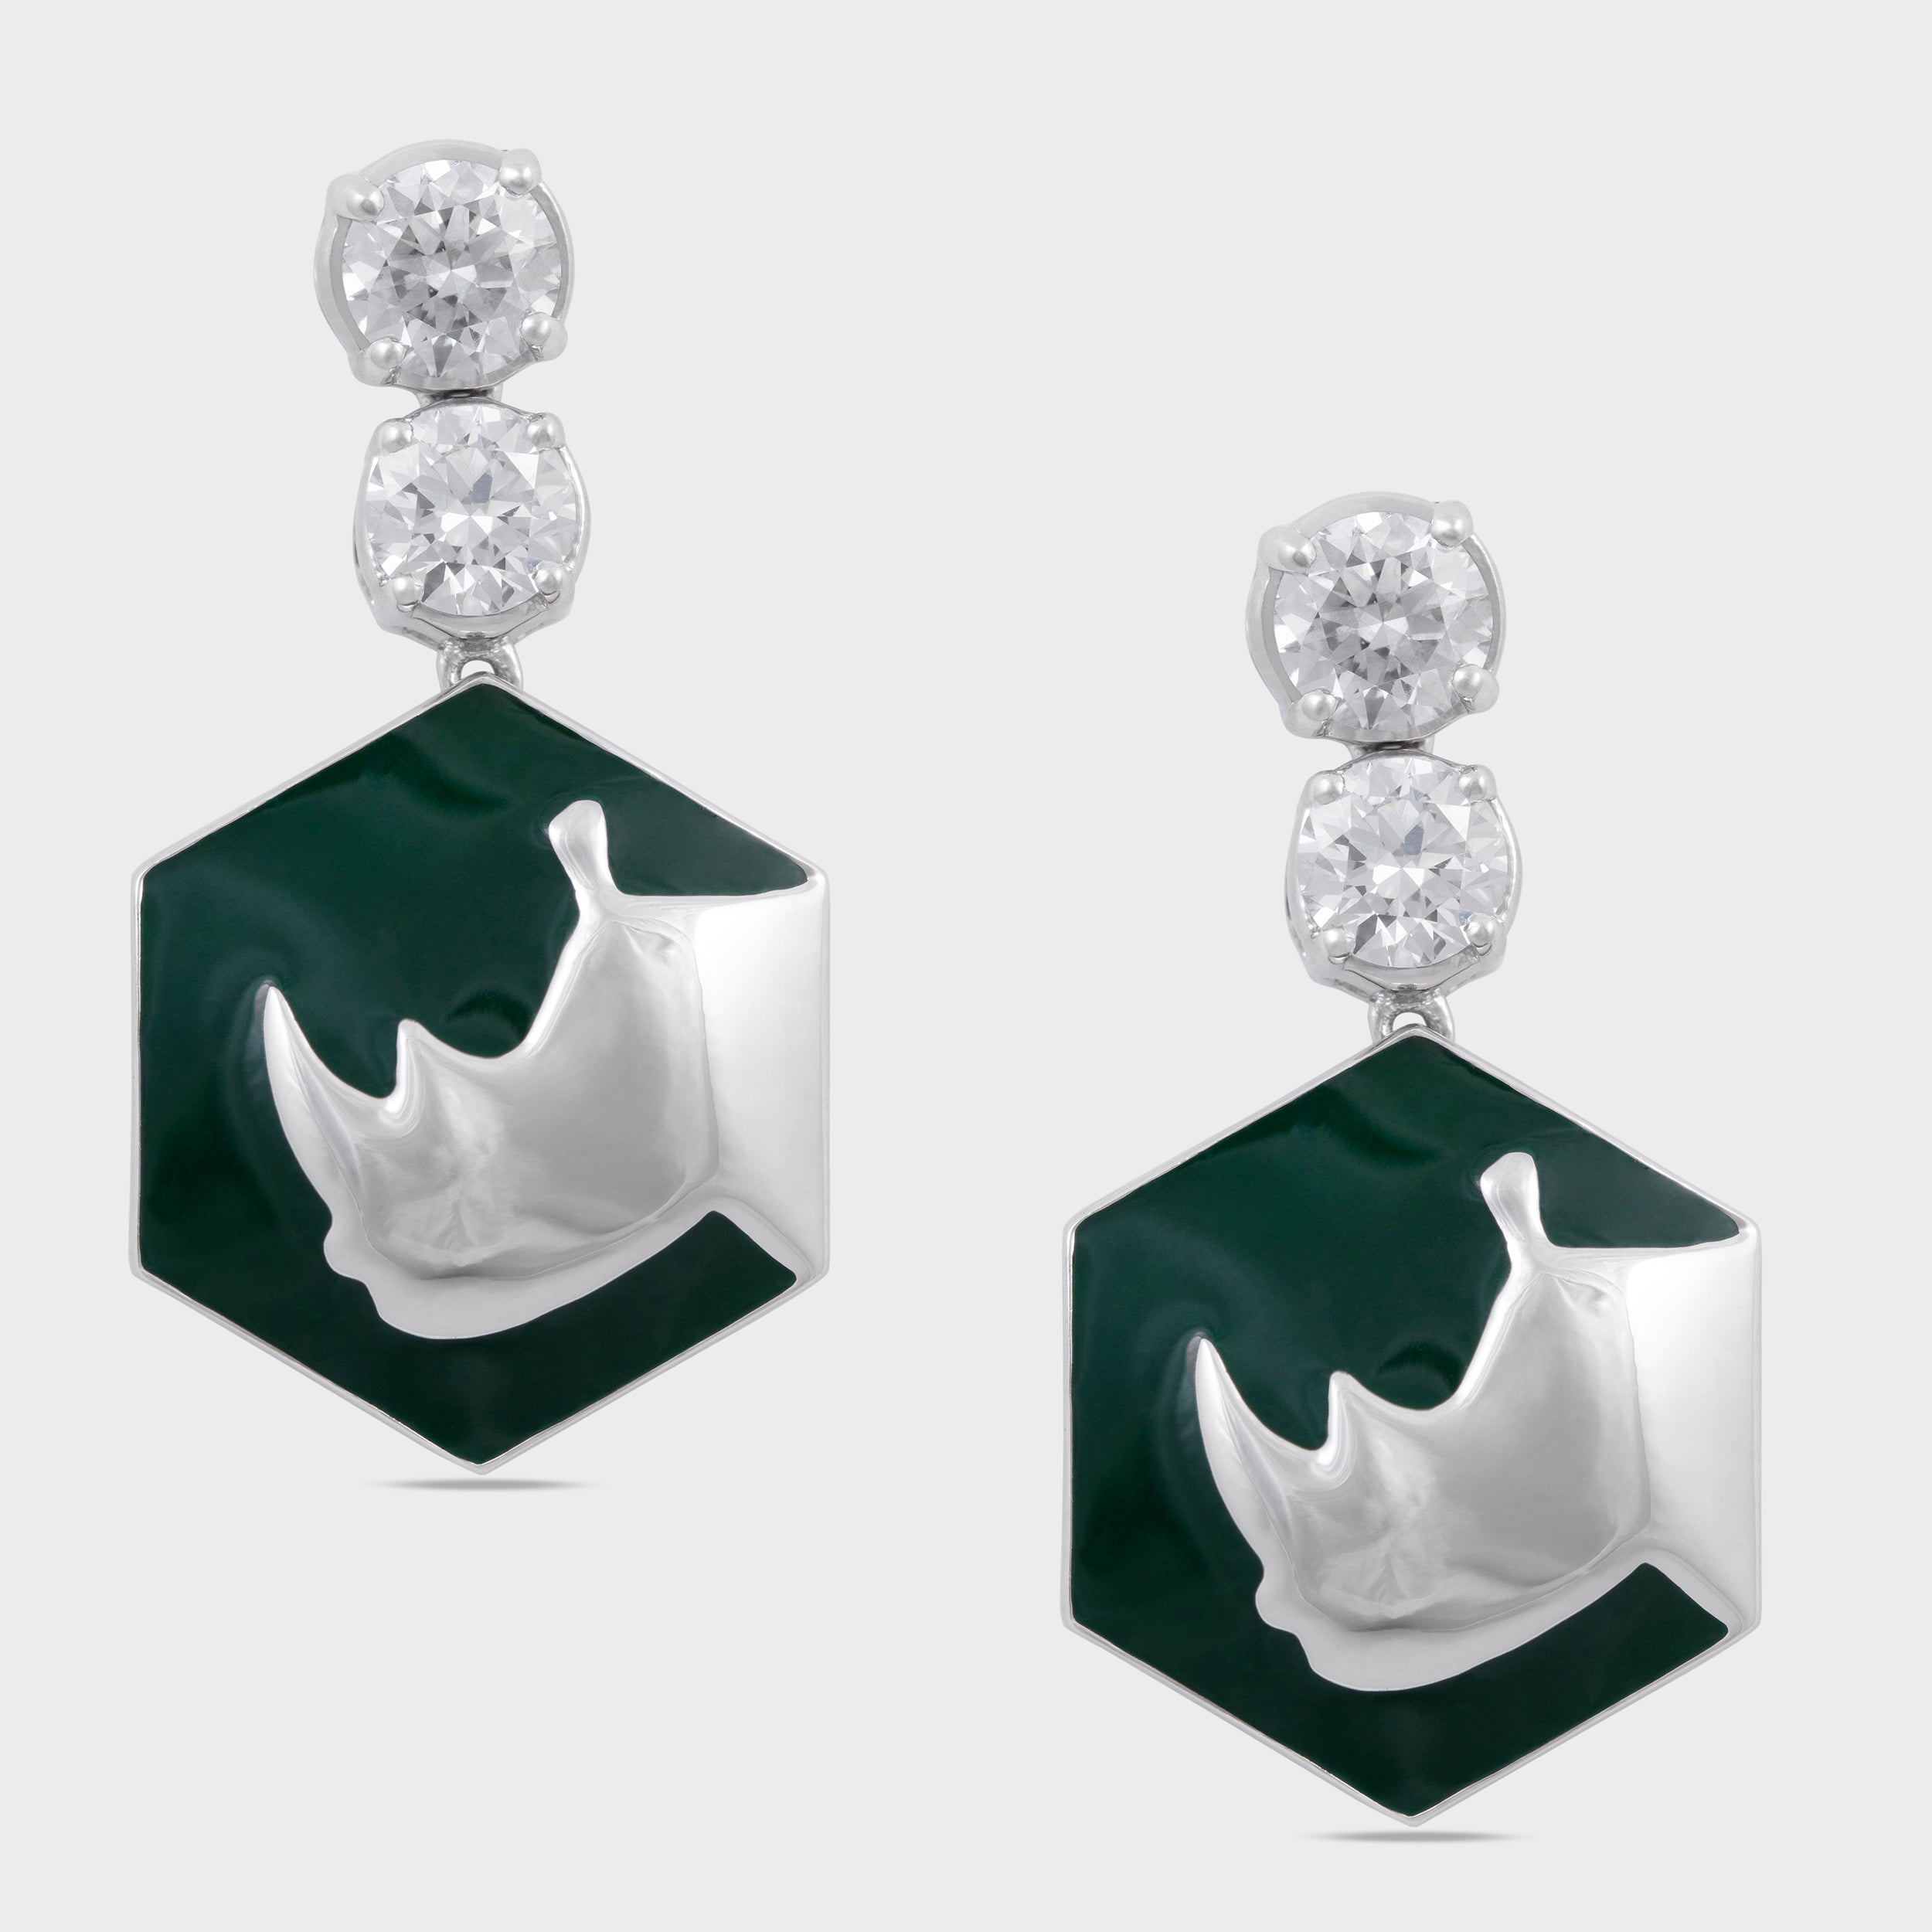 Rhinoceros Silhouette Diamond Drop Earrings | SKU: 0019510613